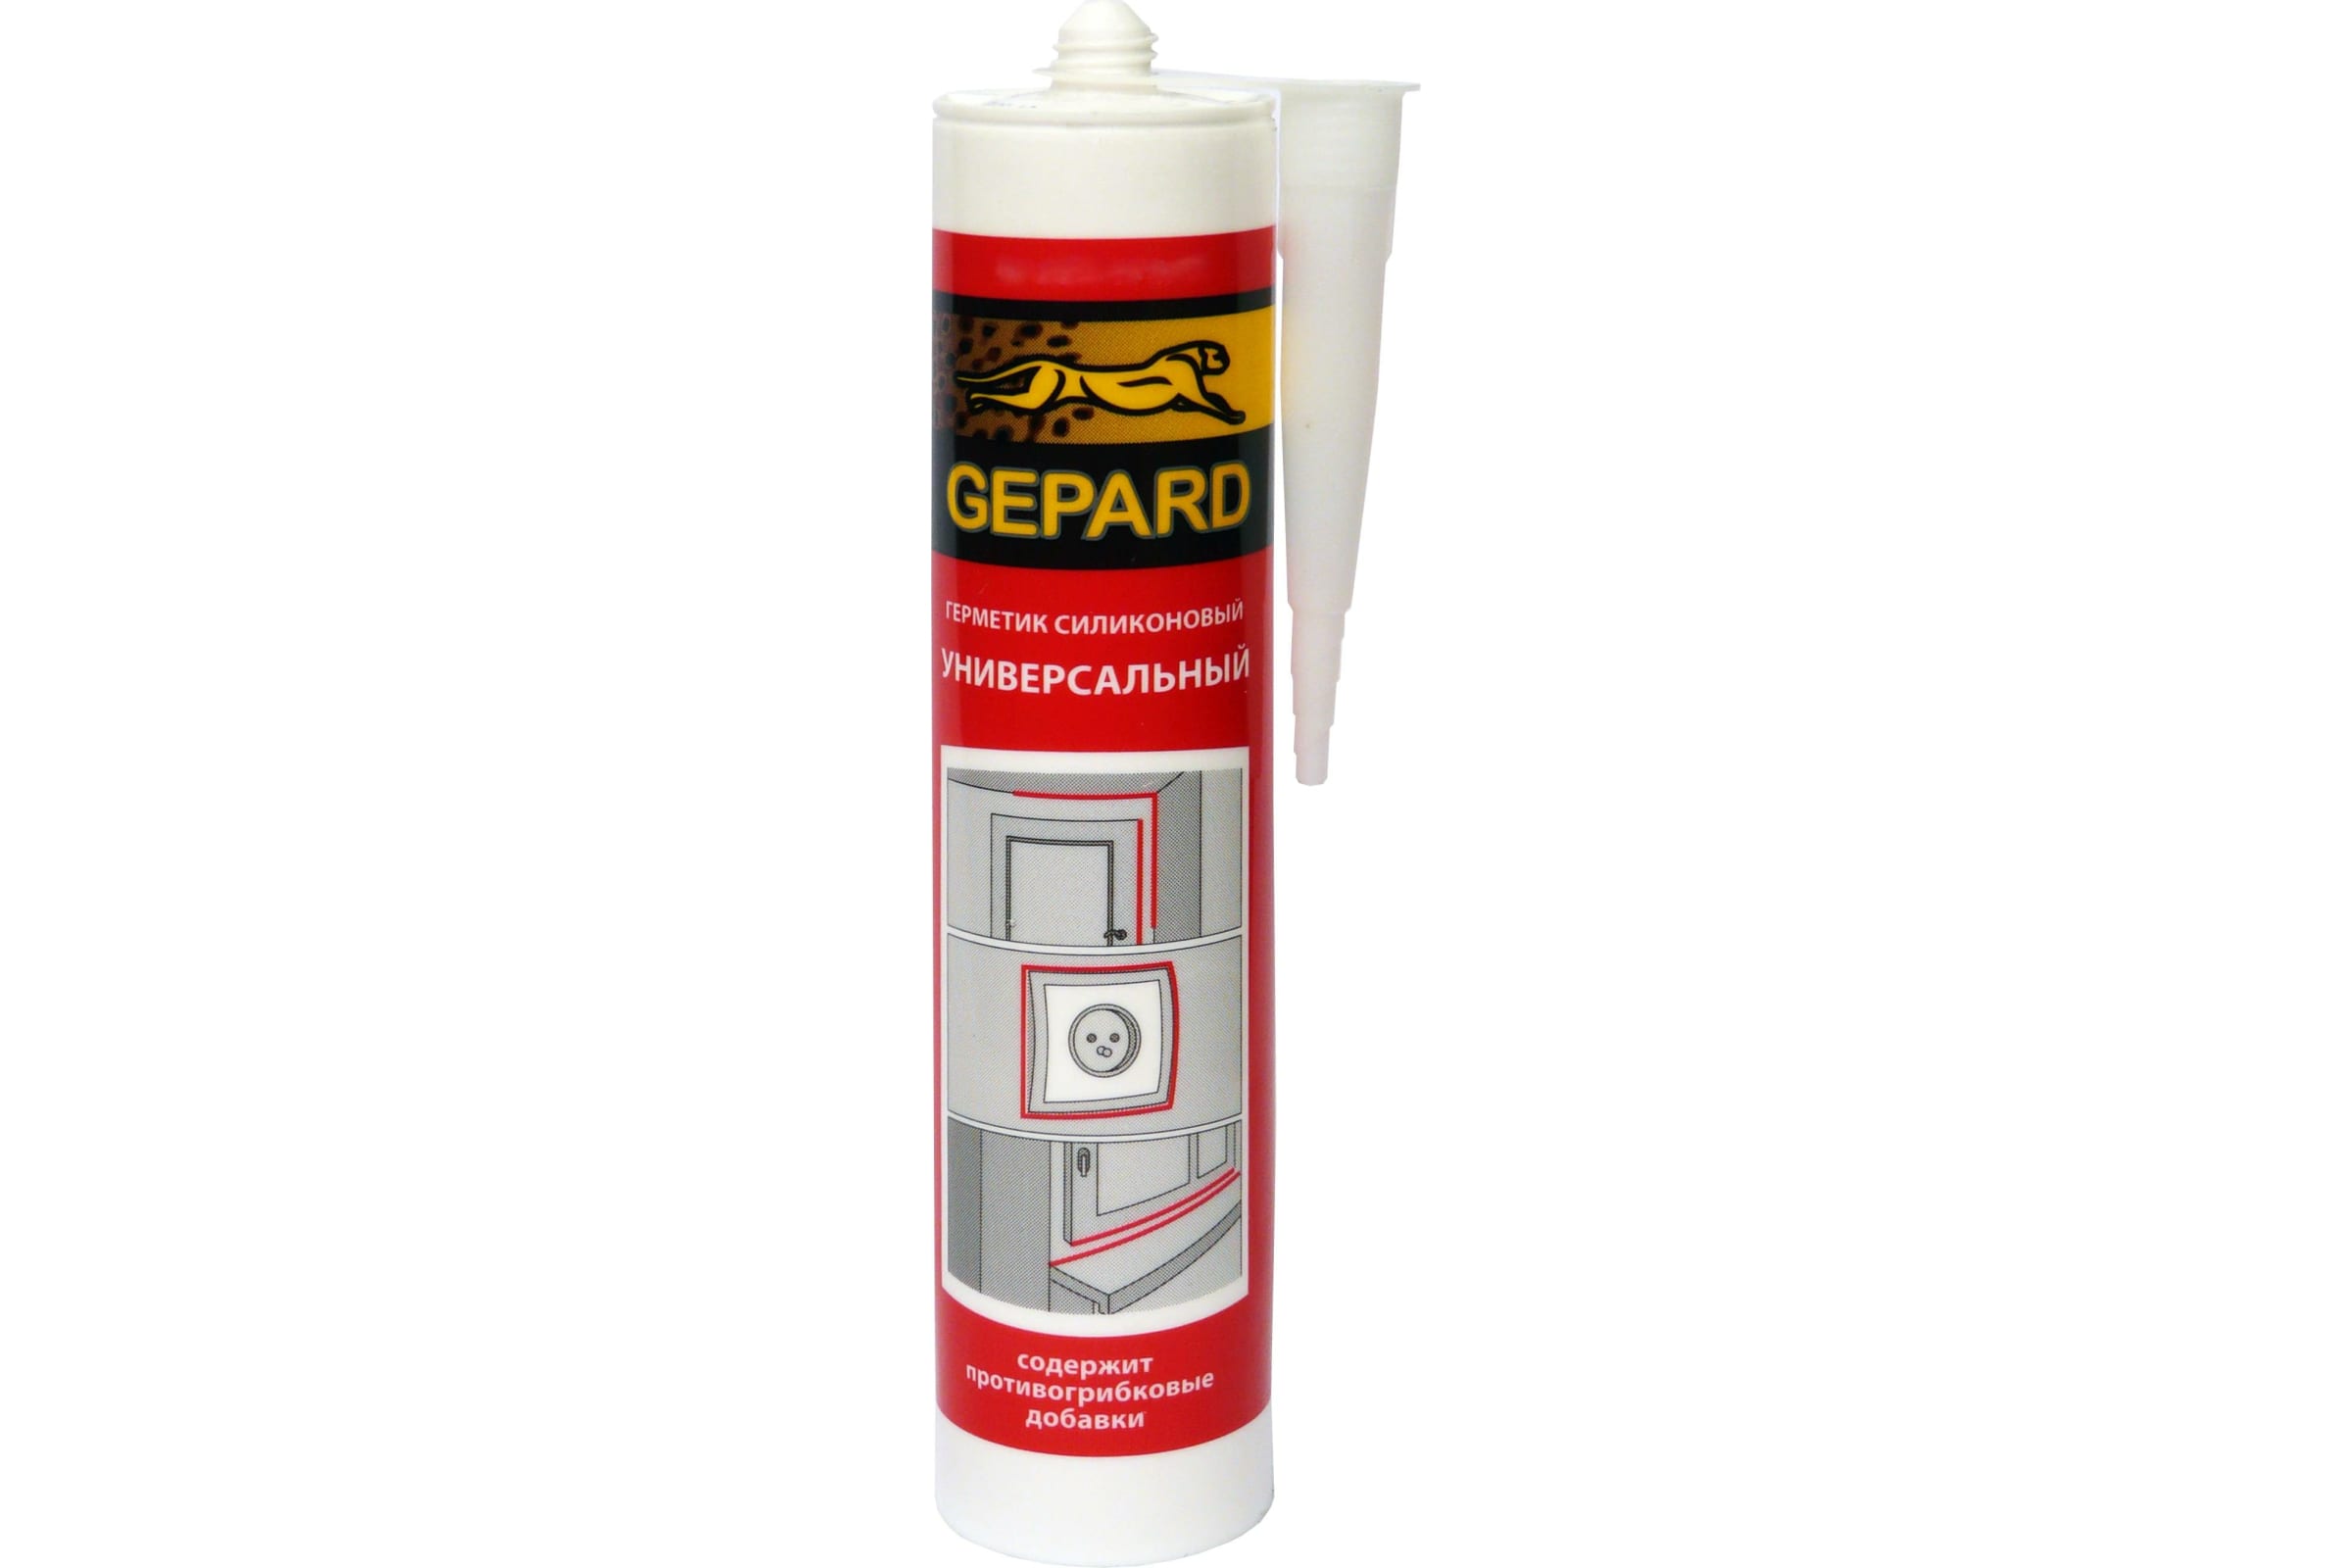 Gepard Герметик силиконовый универсальный CSS 664 белый 280 мл. С0000024450